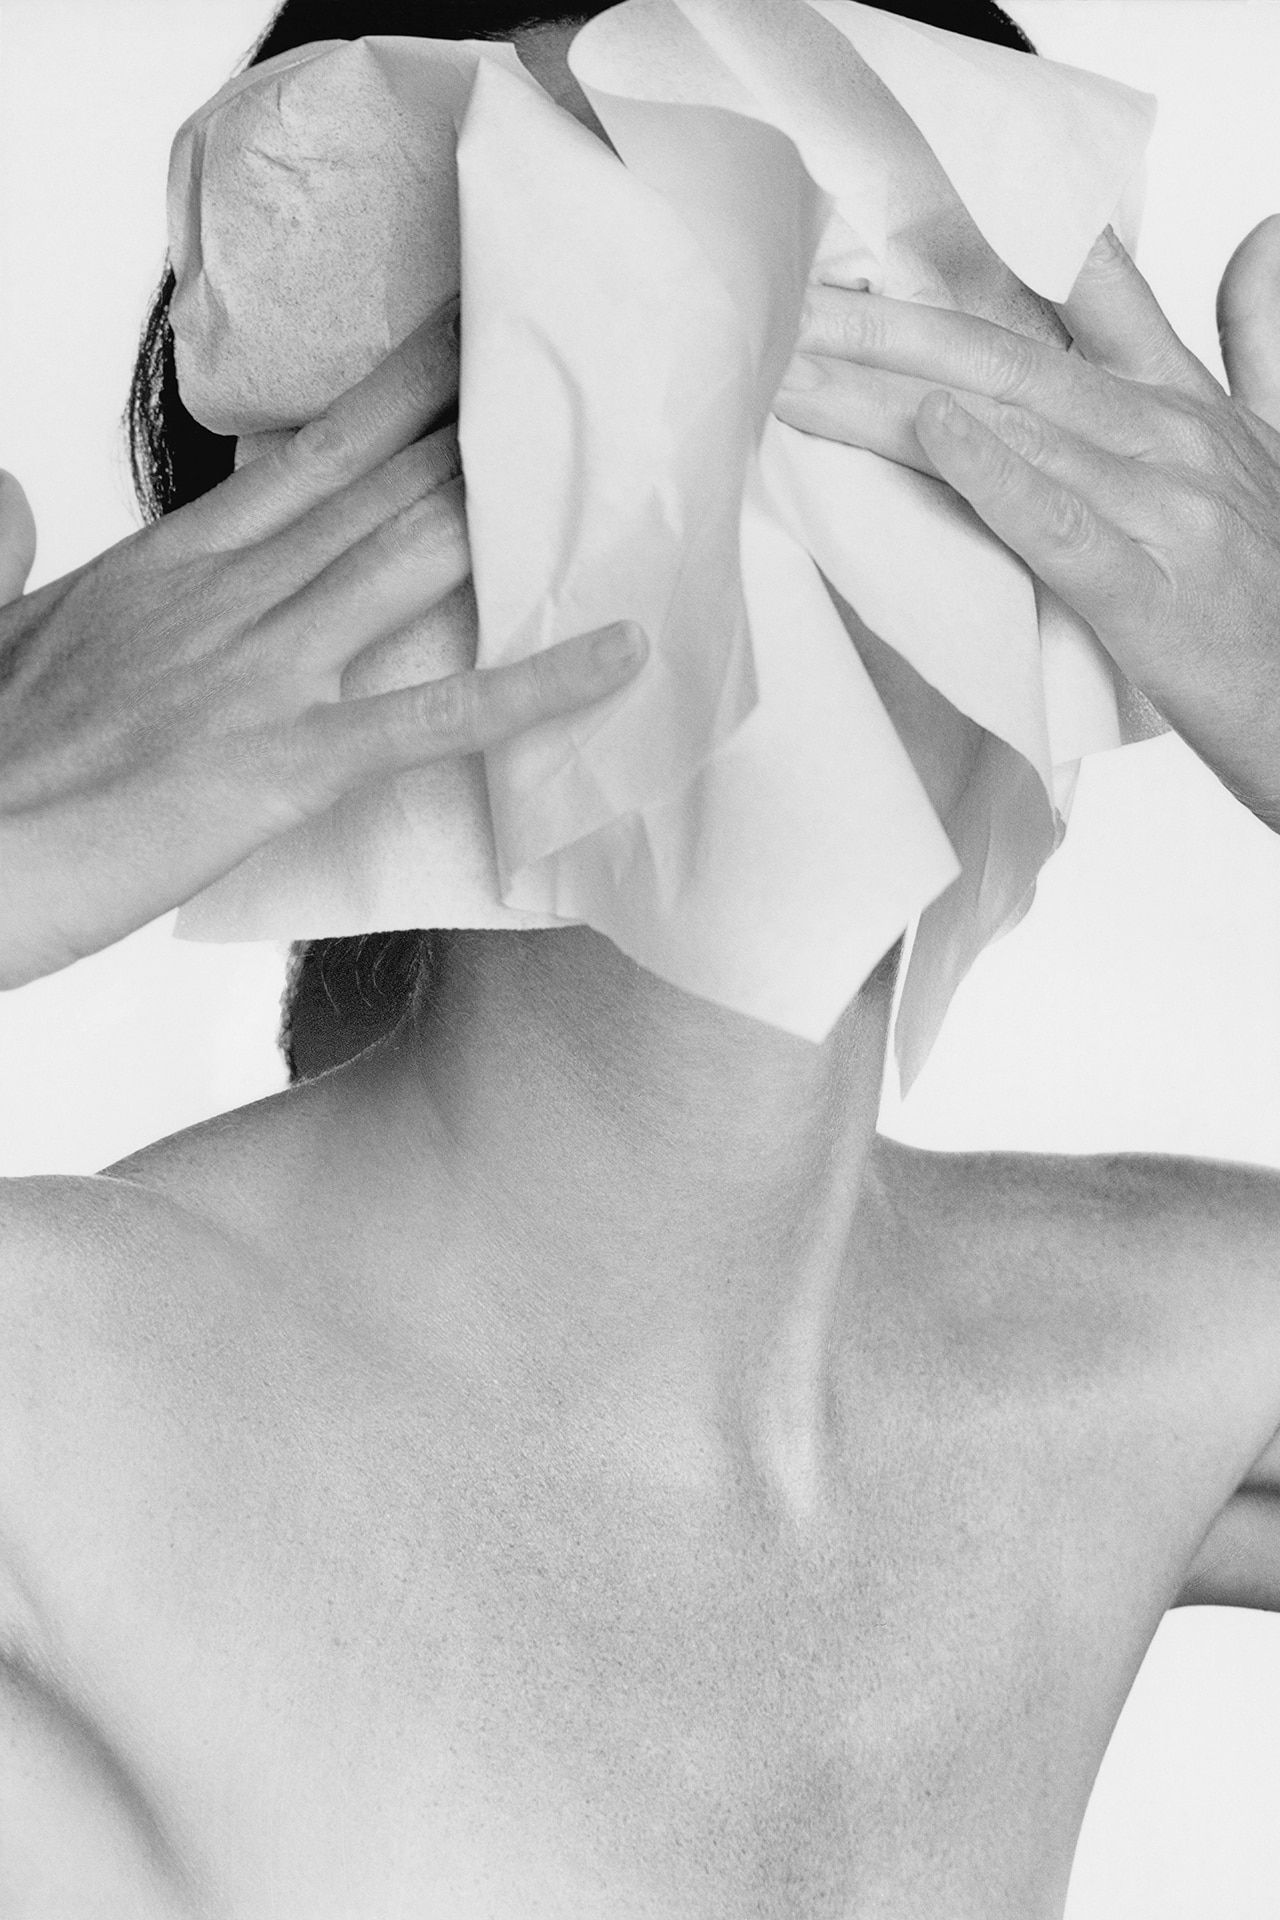 10 Expert Rules For Sensitive Skin